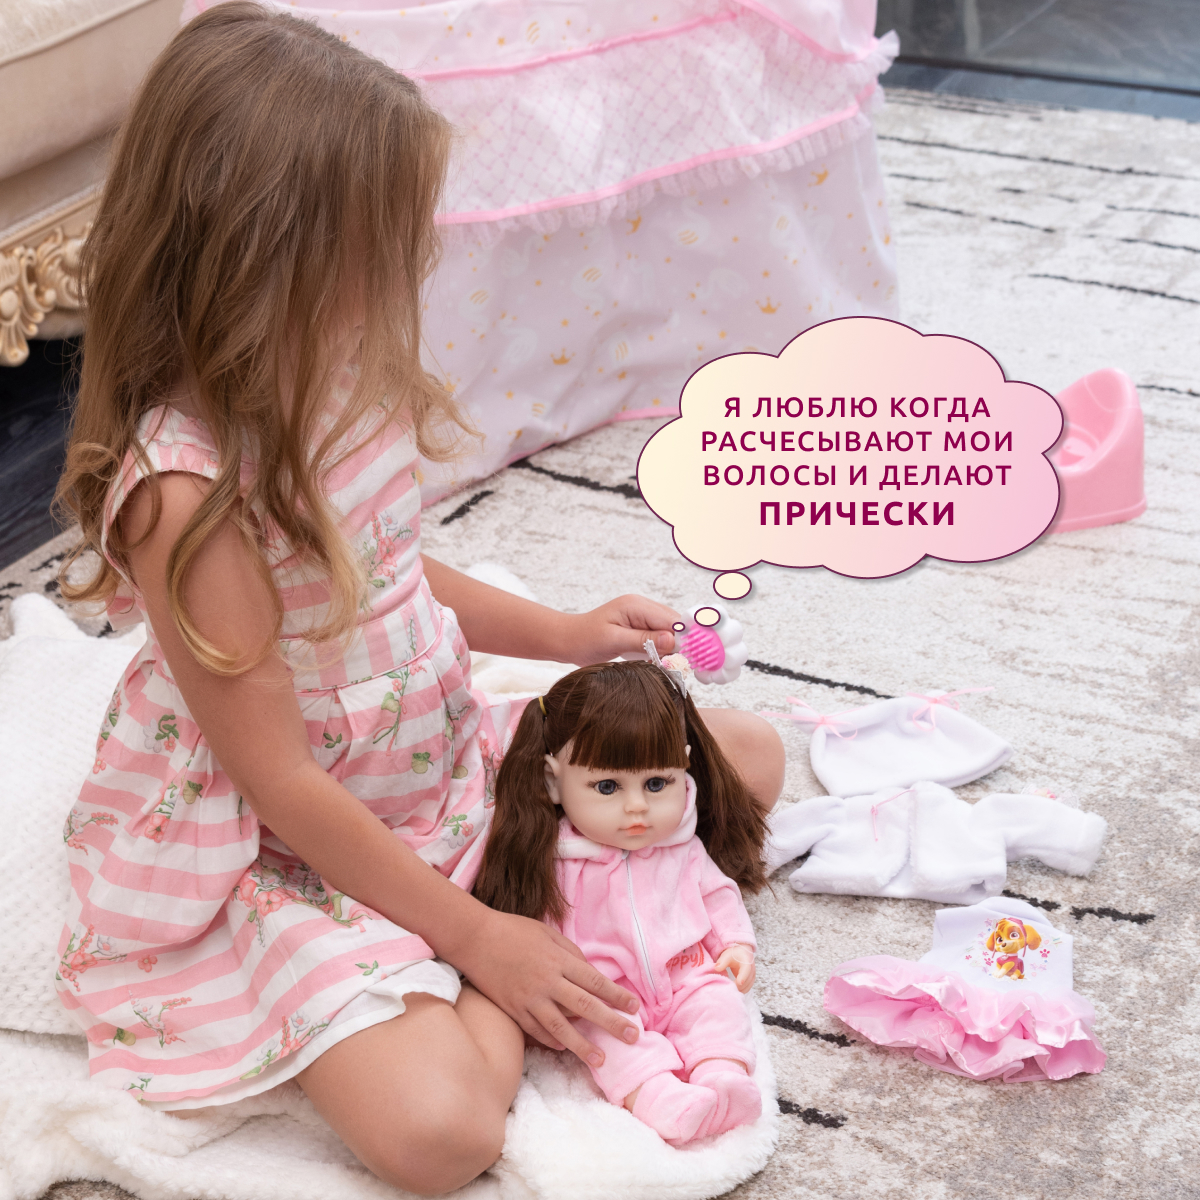 Кукла Реборн QA BABY Альбина девочка интерактивная Пупс набор игрушки для ванной для девочки 38 см 3805 - фото 4